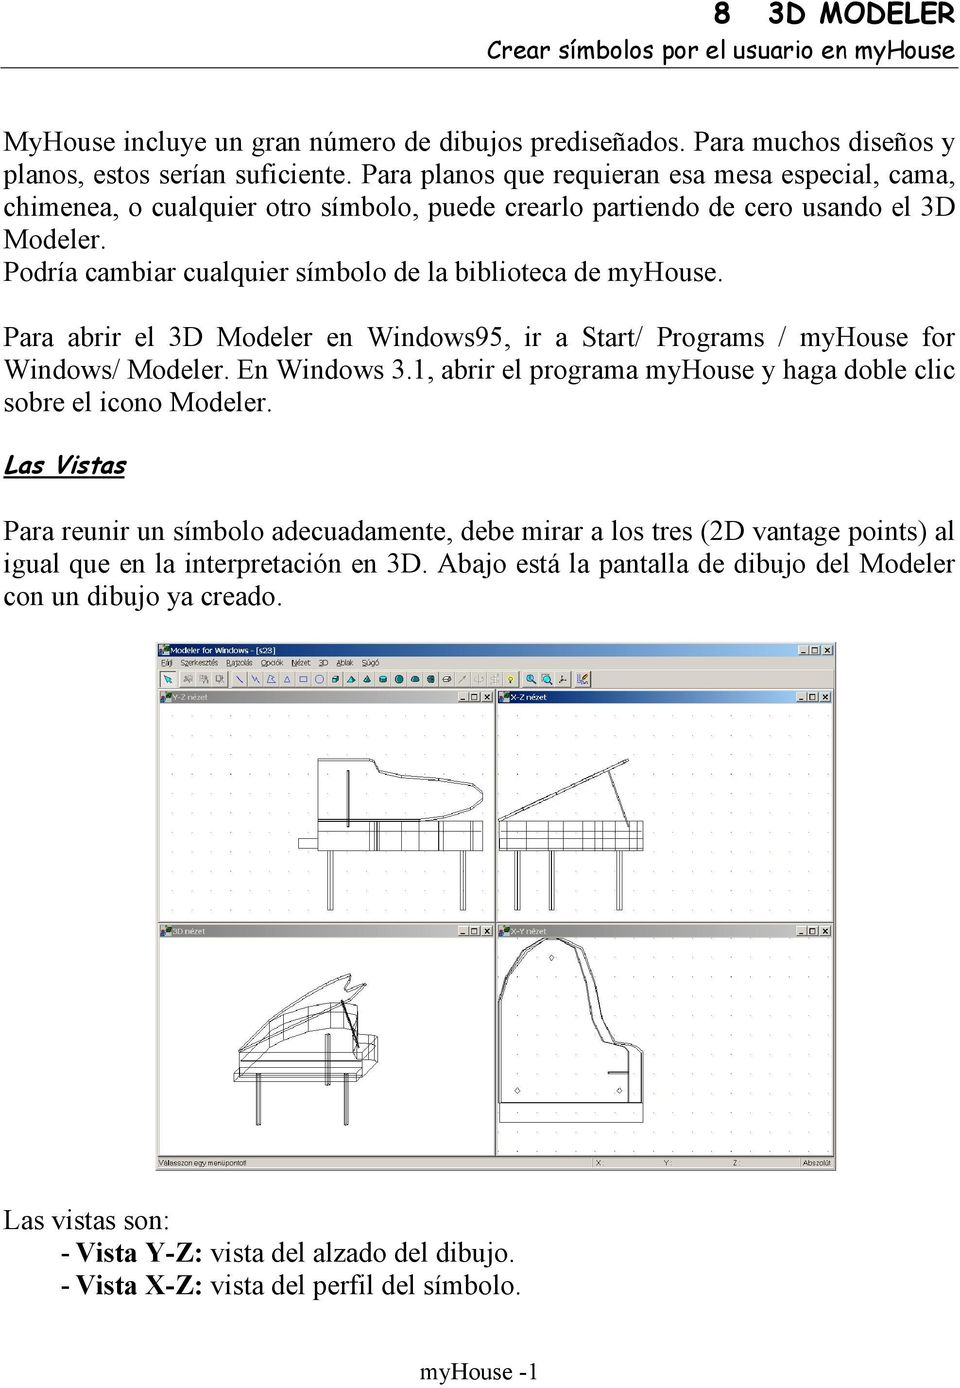 Podría cambiar cualquier símbolo de la biblioteca de myhouse. Para abrir el 3D Modeler en Windows95, ir a Start/ Programs / myhouse for Windows/ Modeler. En Windows 3.